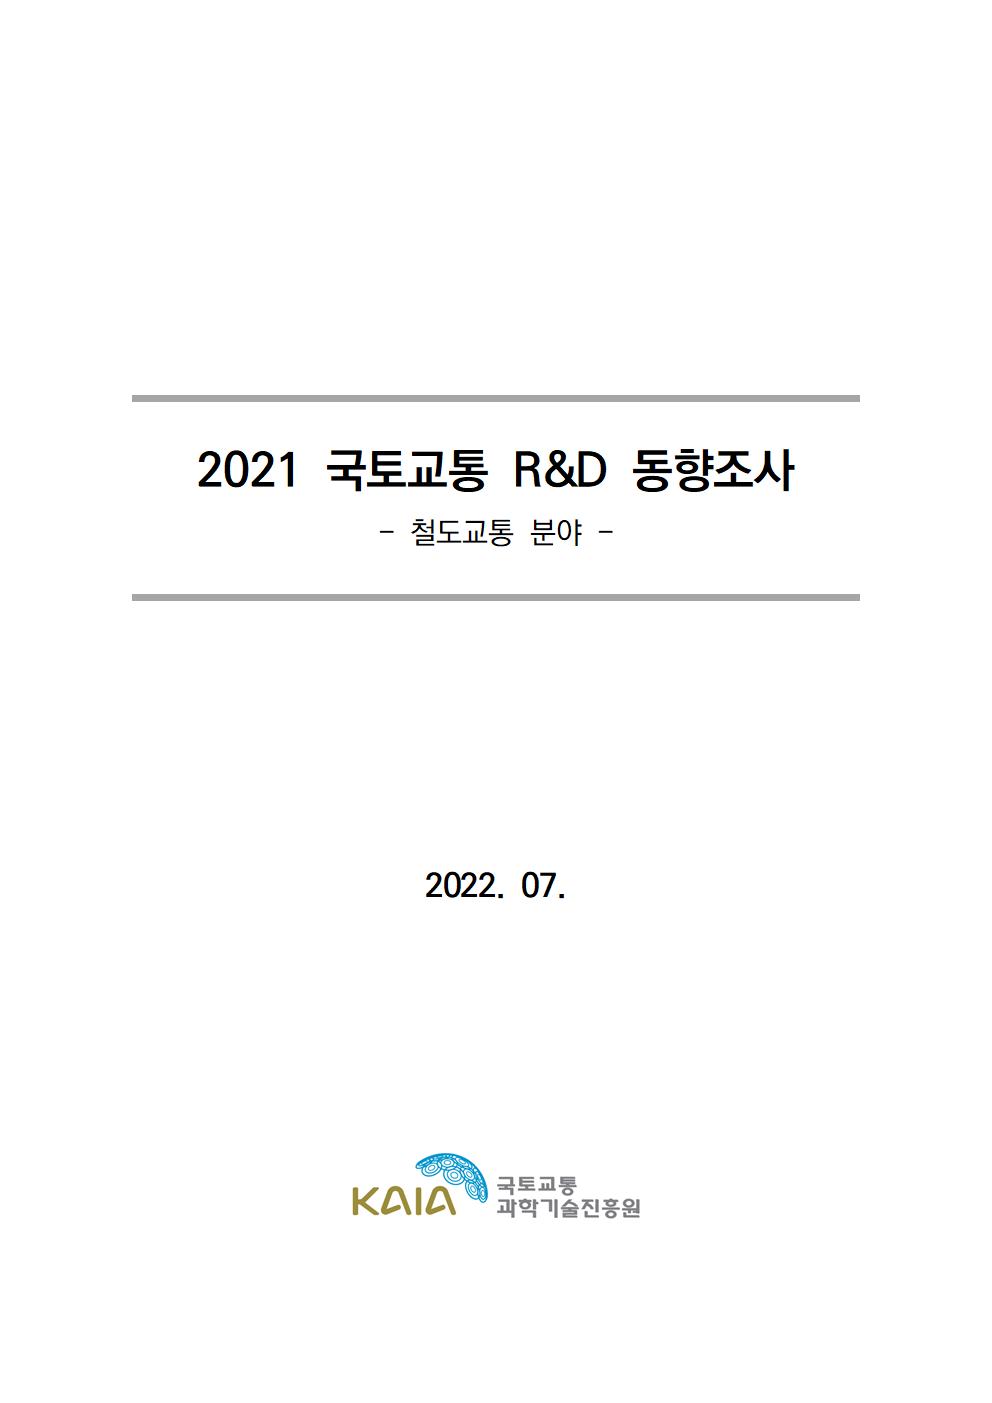 [동향조사] 2021 국토교통 R&D 동향조사 보고서(철도 분야) 